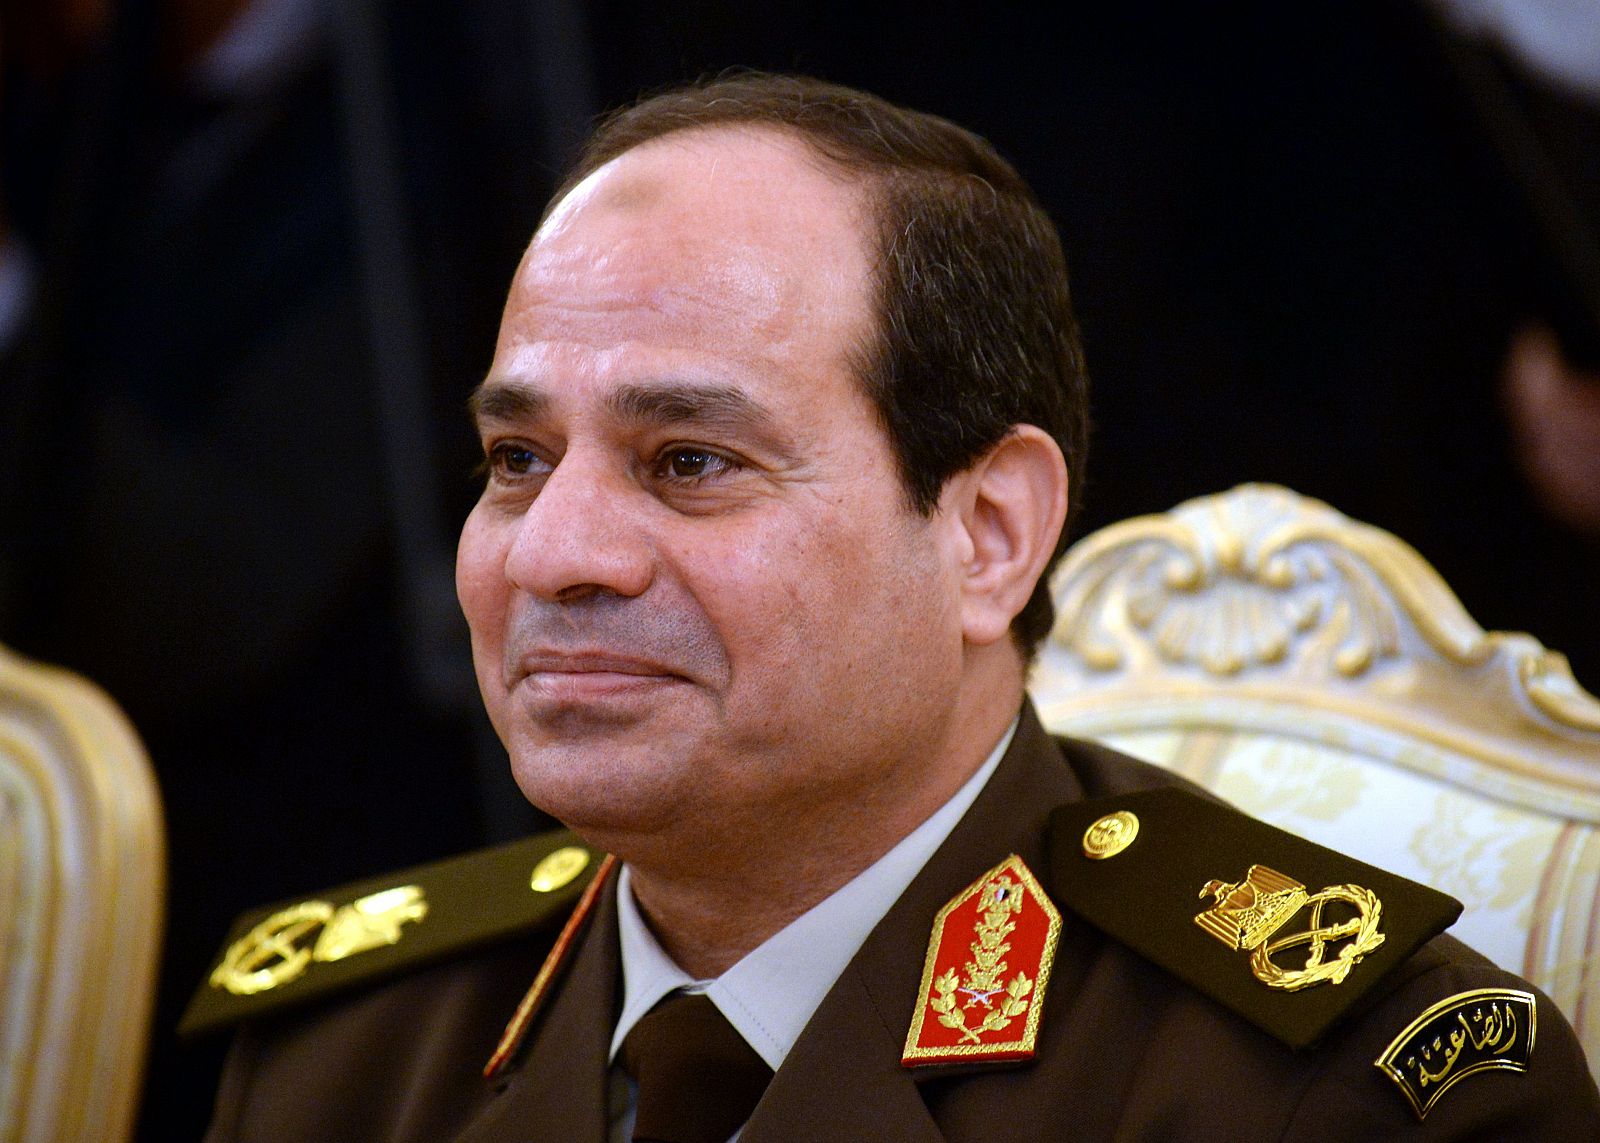 El ministro de Defensa y jefe del Ejército, Abdelfatah al Sisi, es el candidato favorito para presidir Egipto.